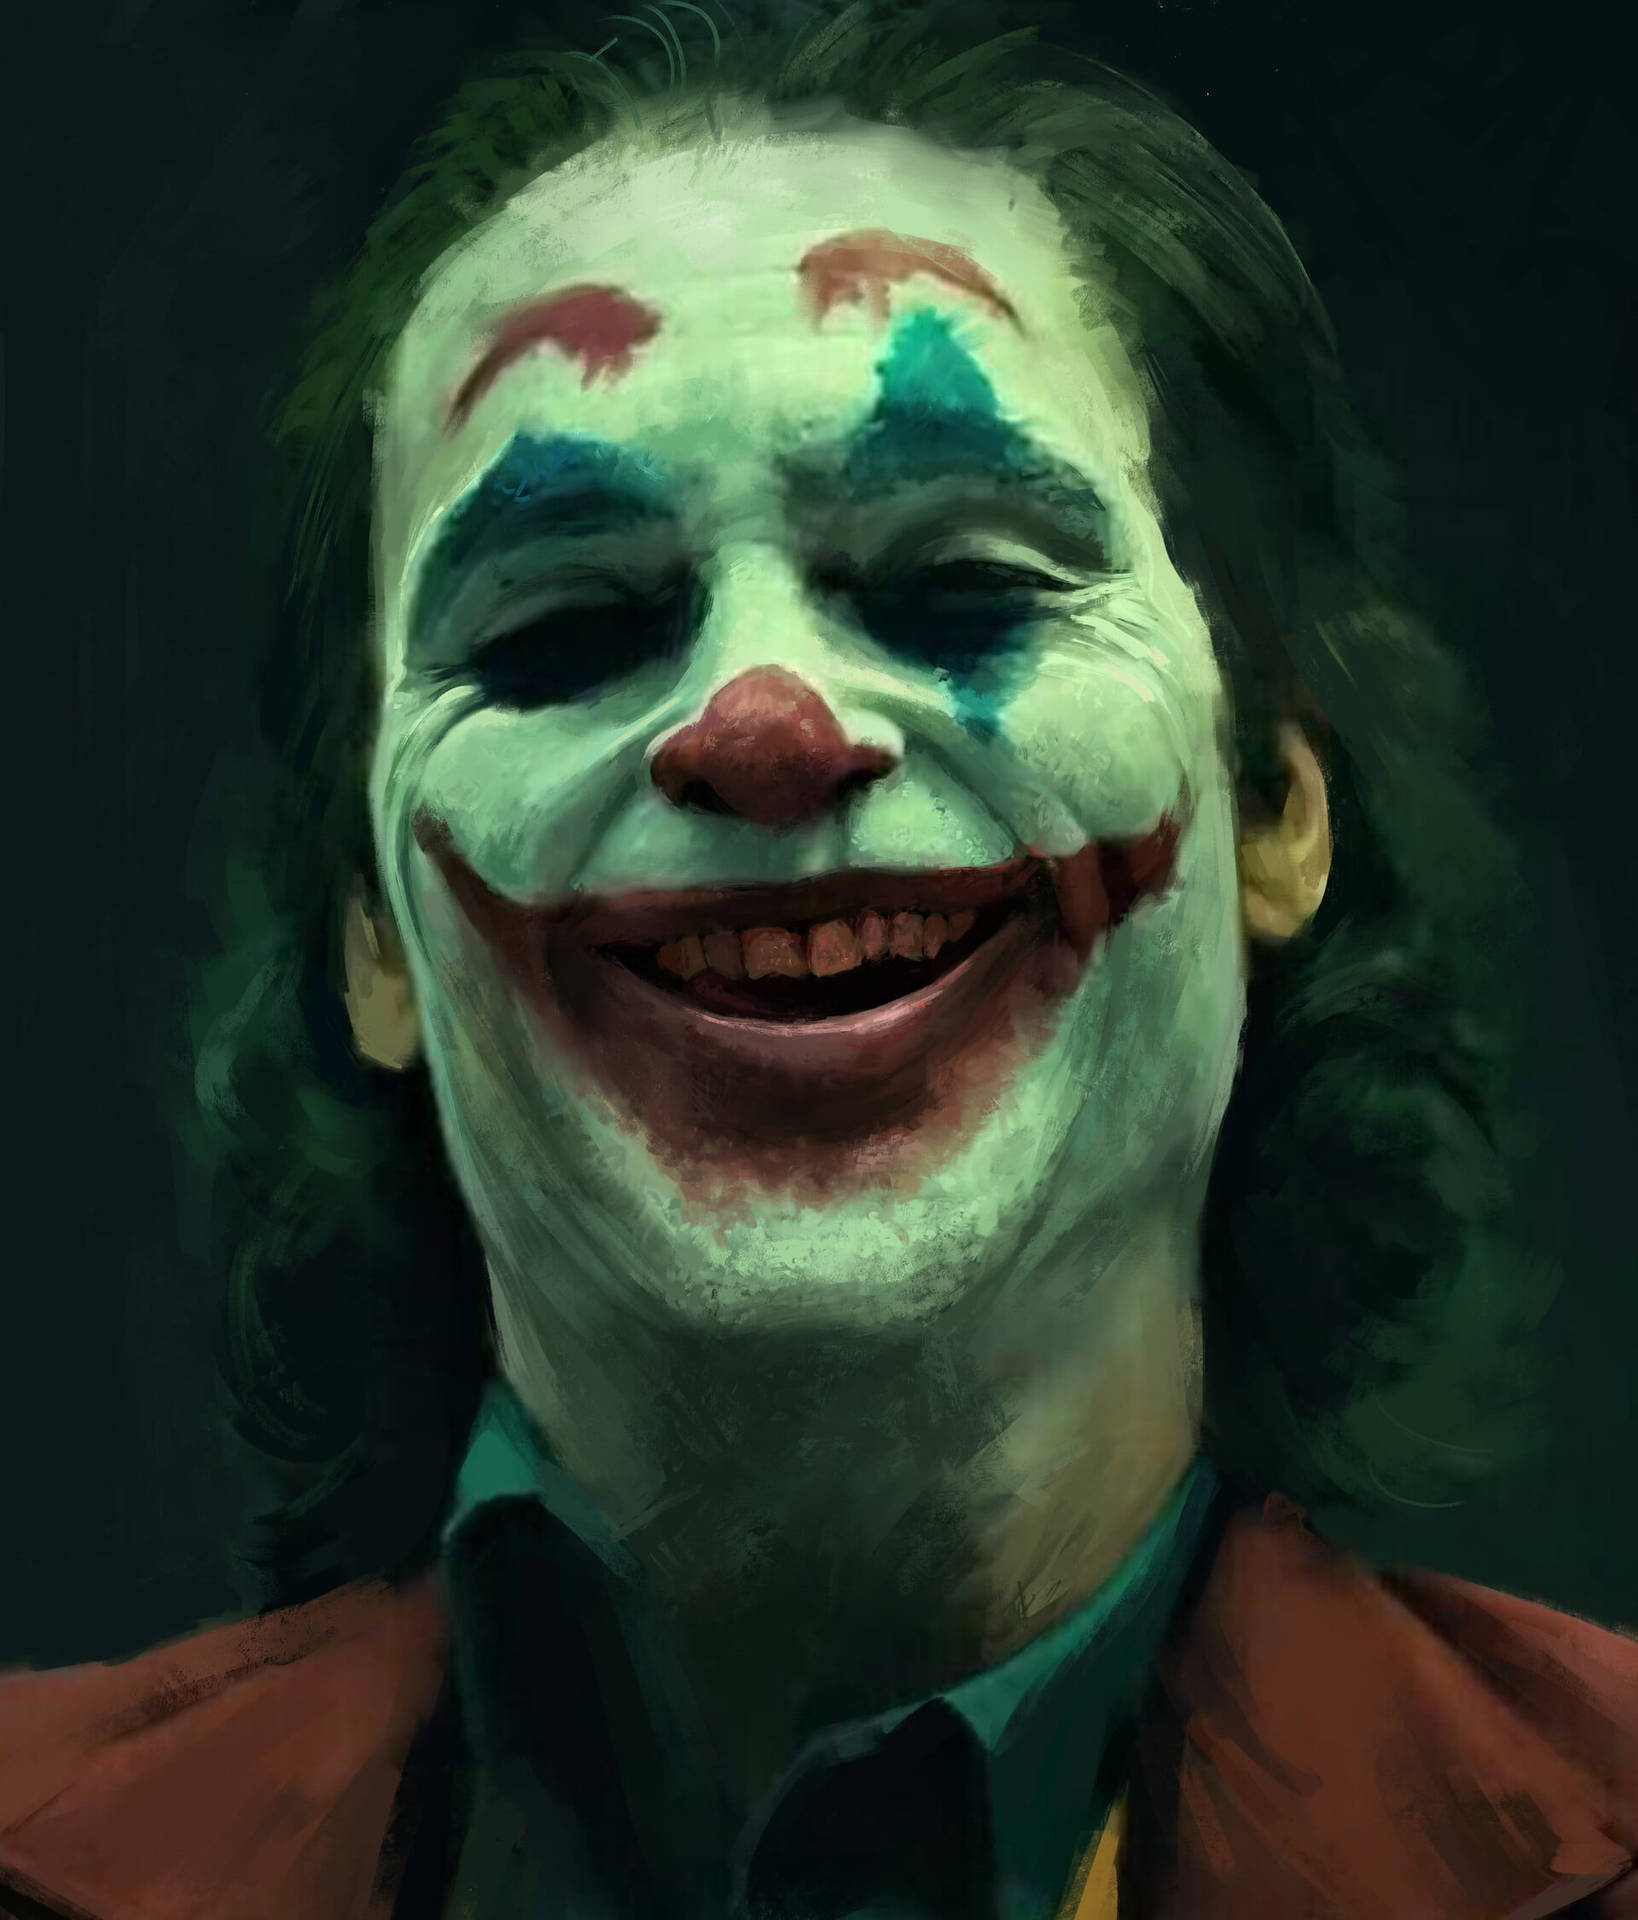 Red Smile Joker 2020 Wallpaper